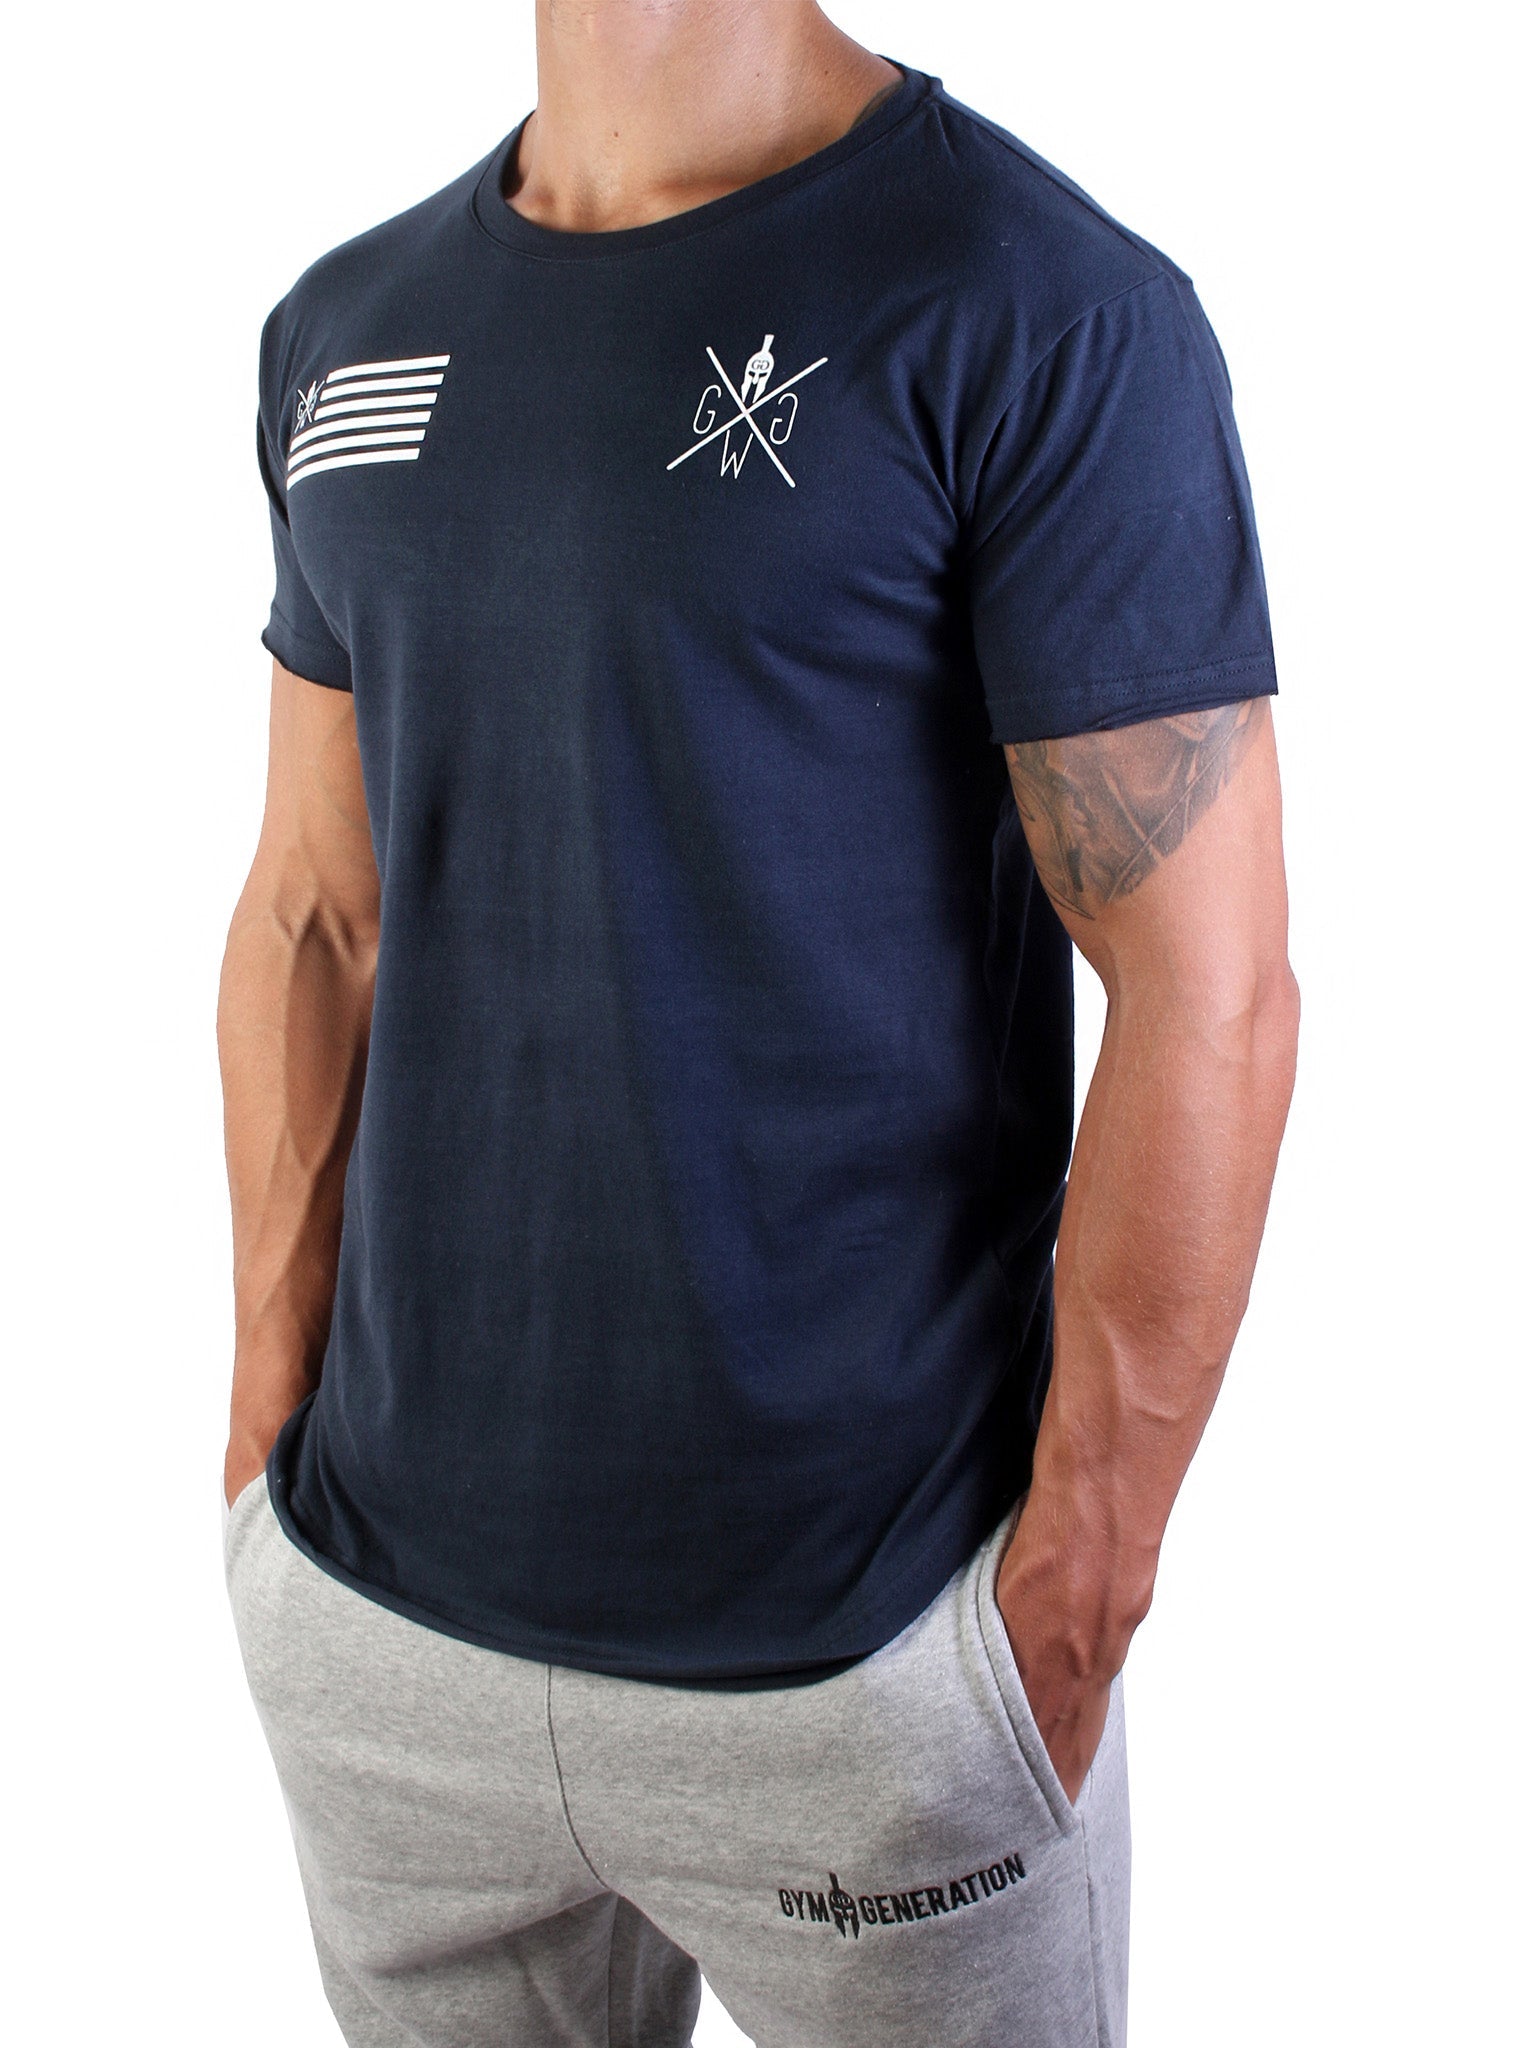 Vielseitiges Navy-Blaues T-Shirt von Gym Generation, ideal kombinierbar mit Jeans oder Fitnessbekleidung.